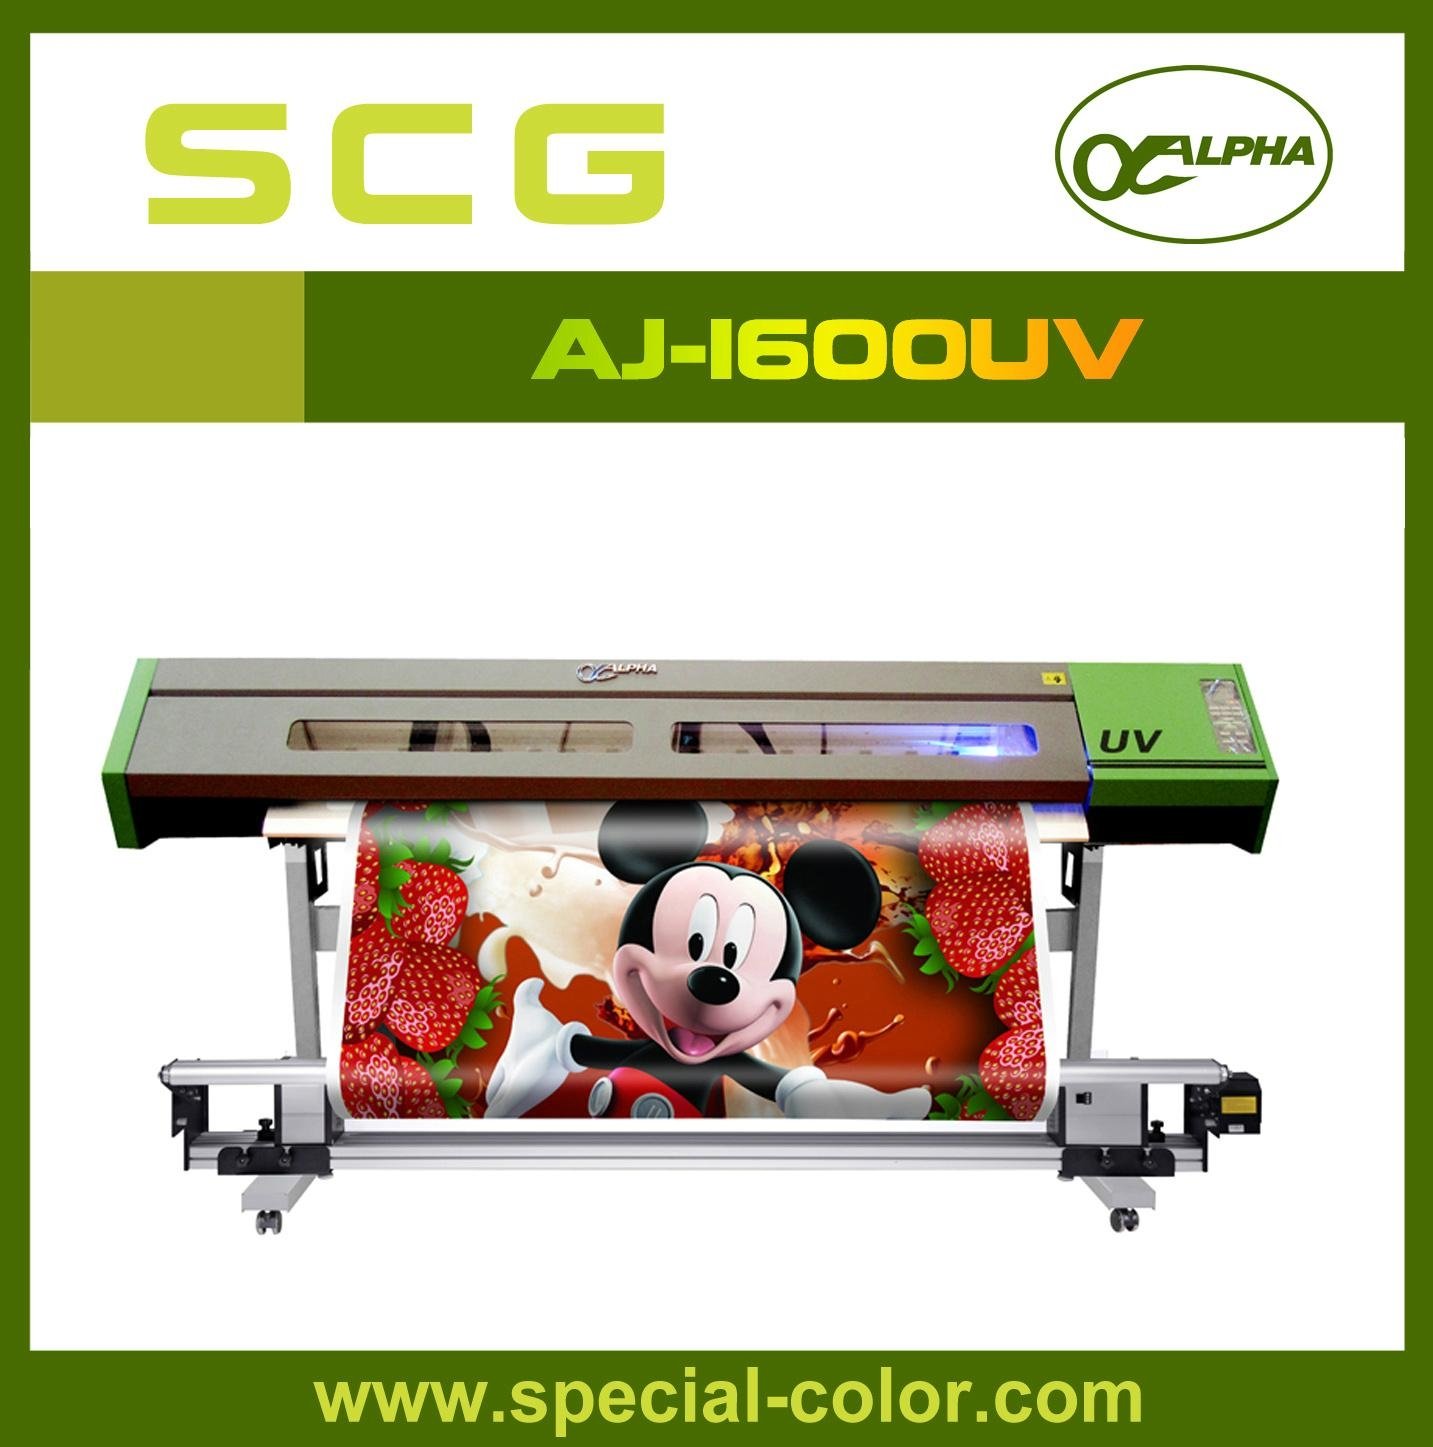 UV Printer AJ-1600UV